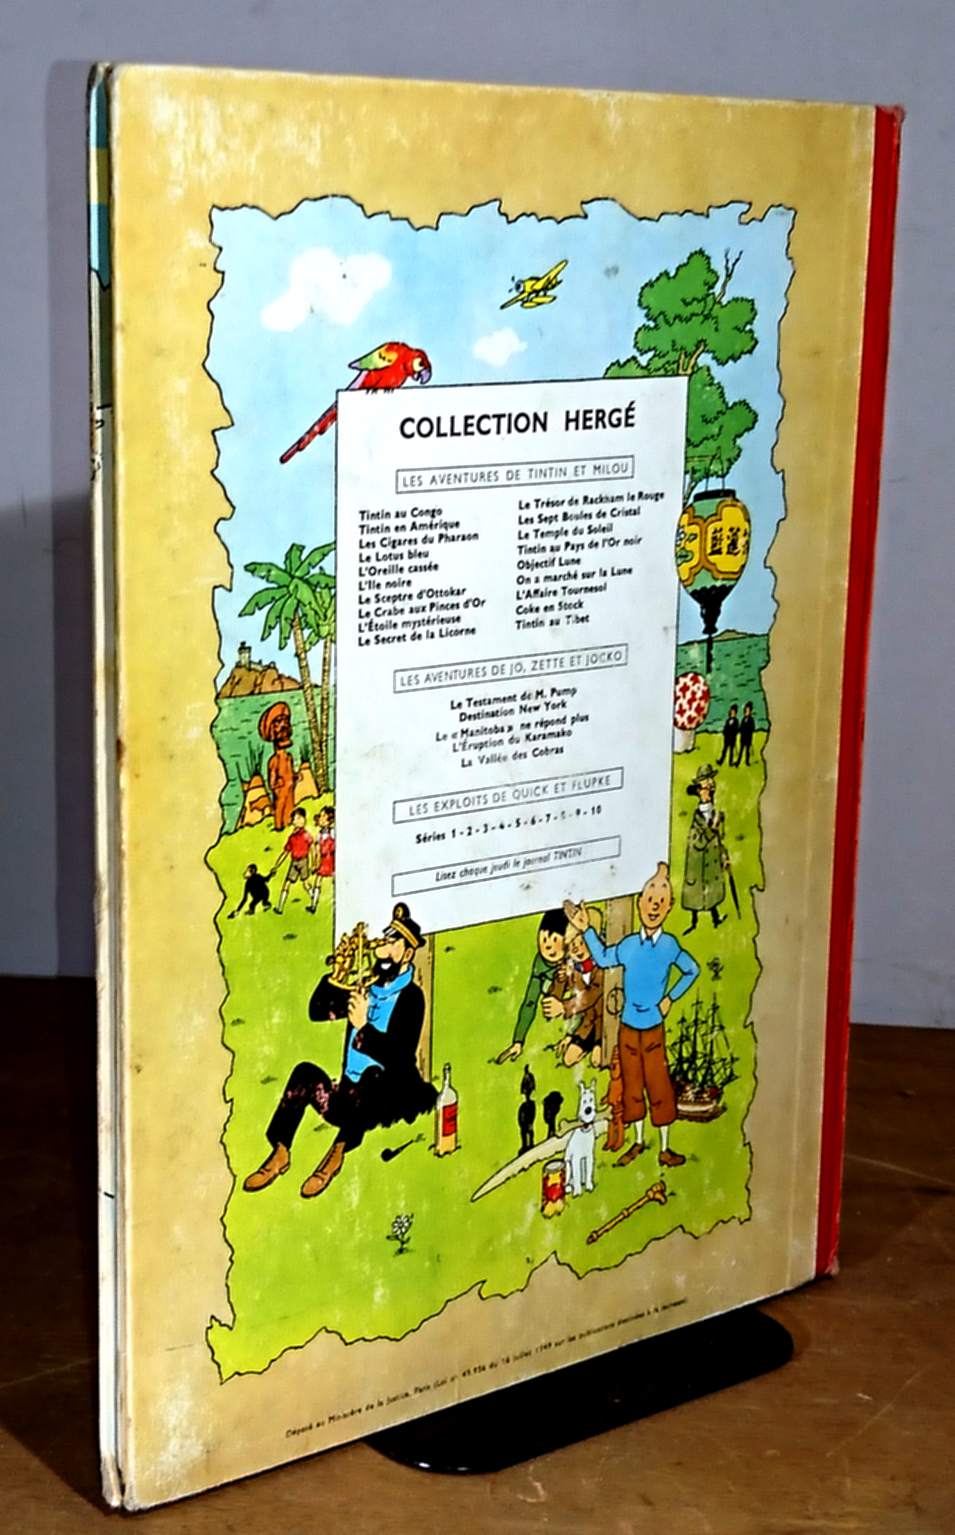 Tintin - 3 aventures - Vol. 5 : Objectif Lune + On a marché sur la